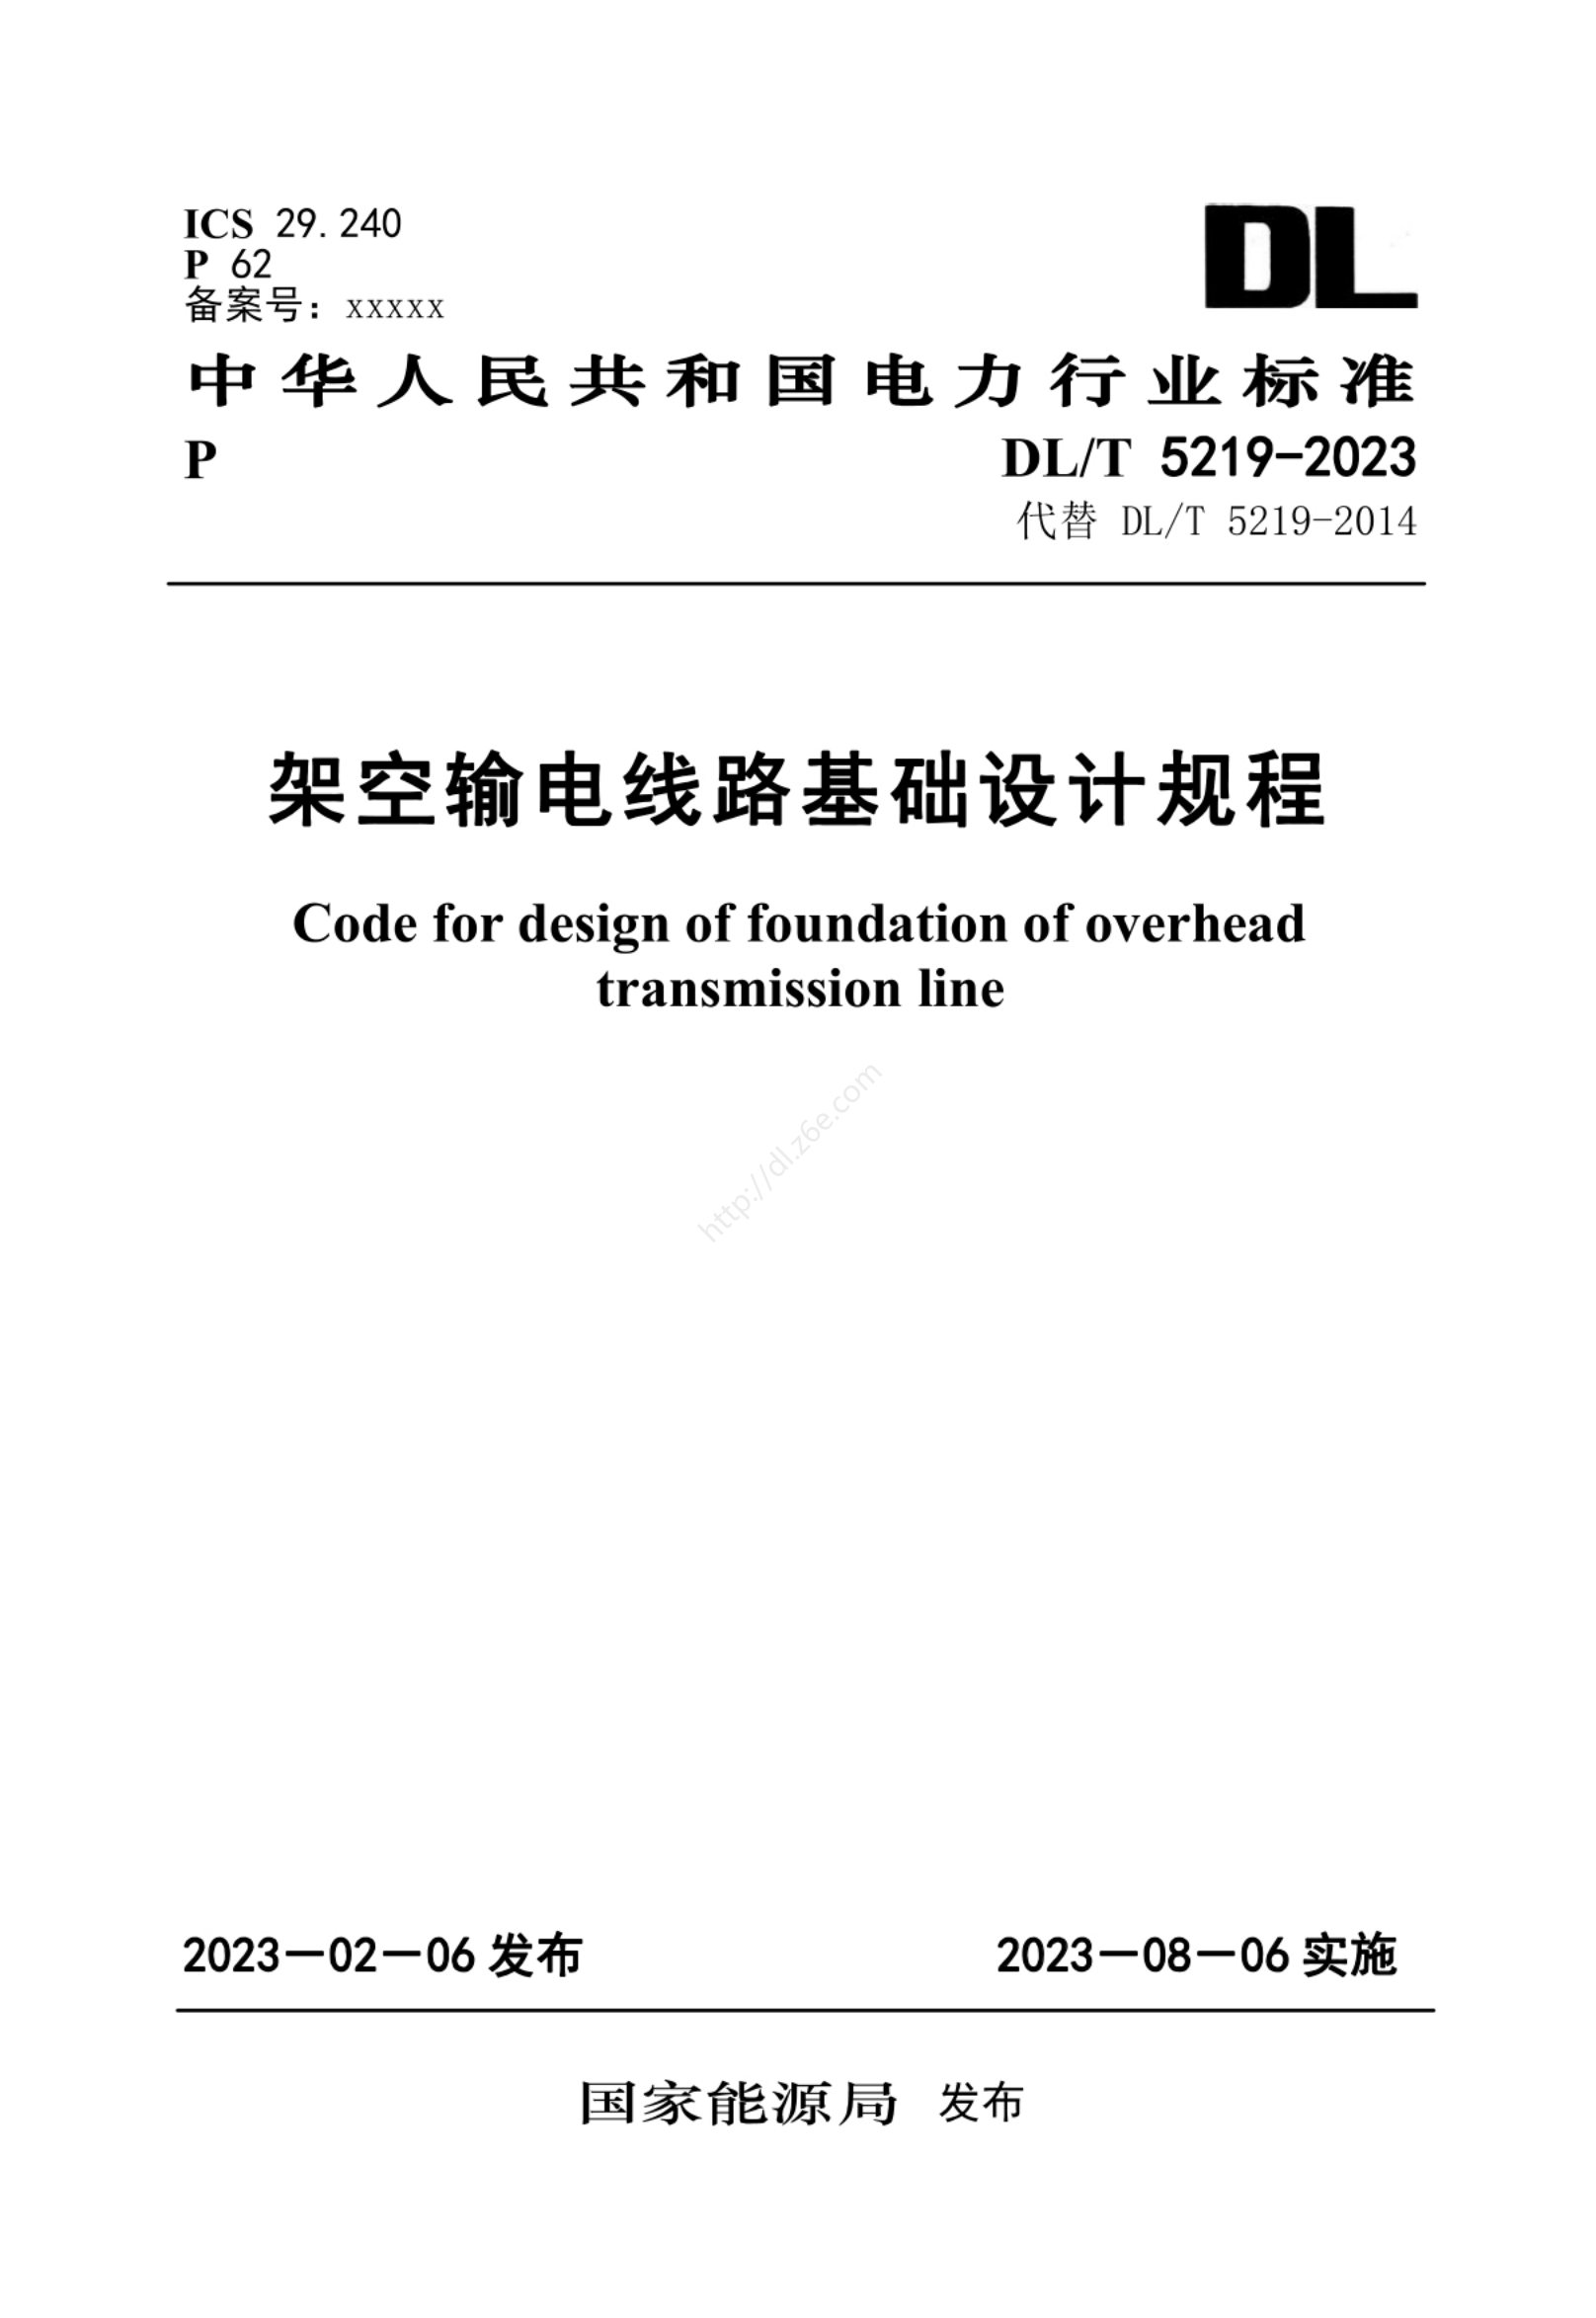 DLT_5219-2023_架空输电线路基础设计规程（正式版）及 DL/T5219-2014架空输电线路基础设计技术规程(附条文说明).pdf